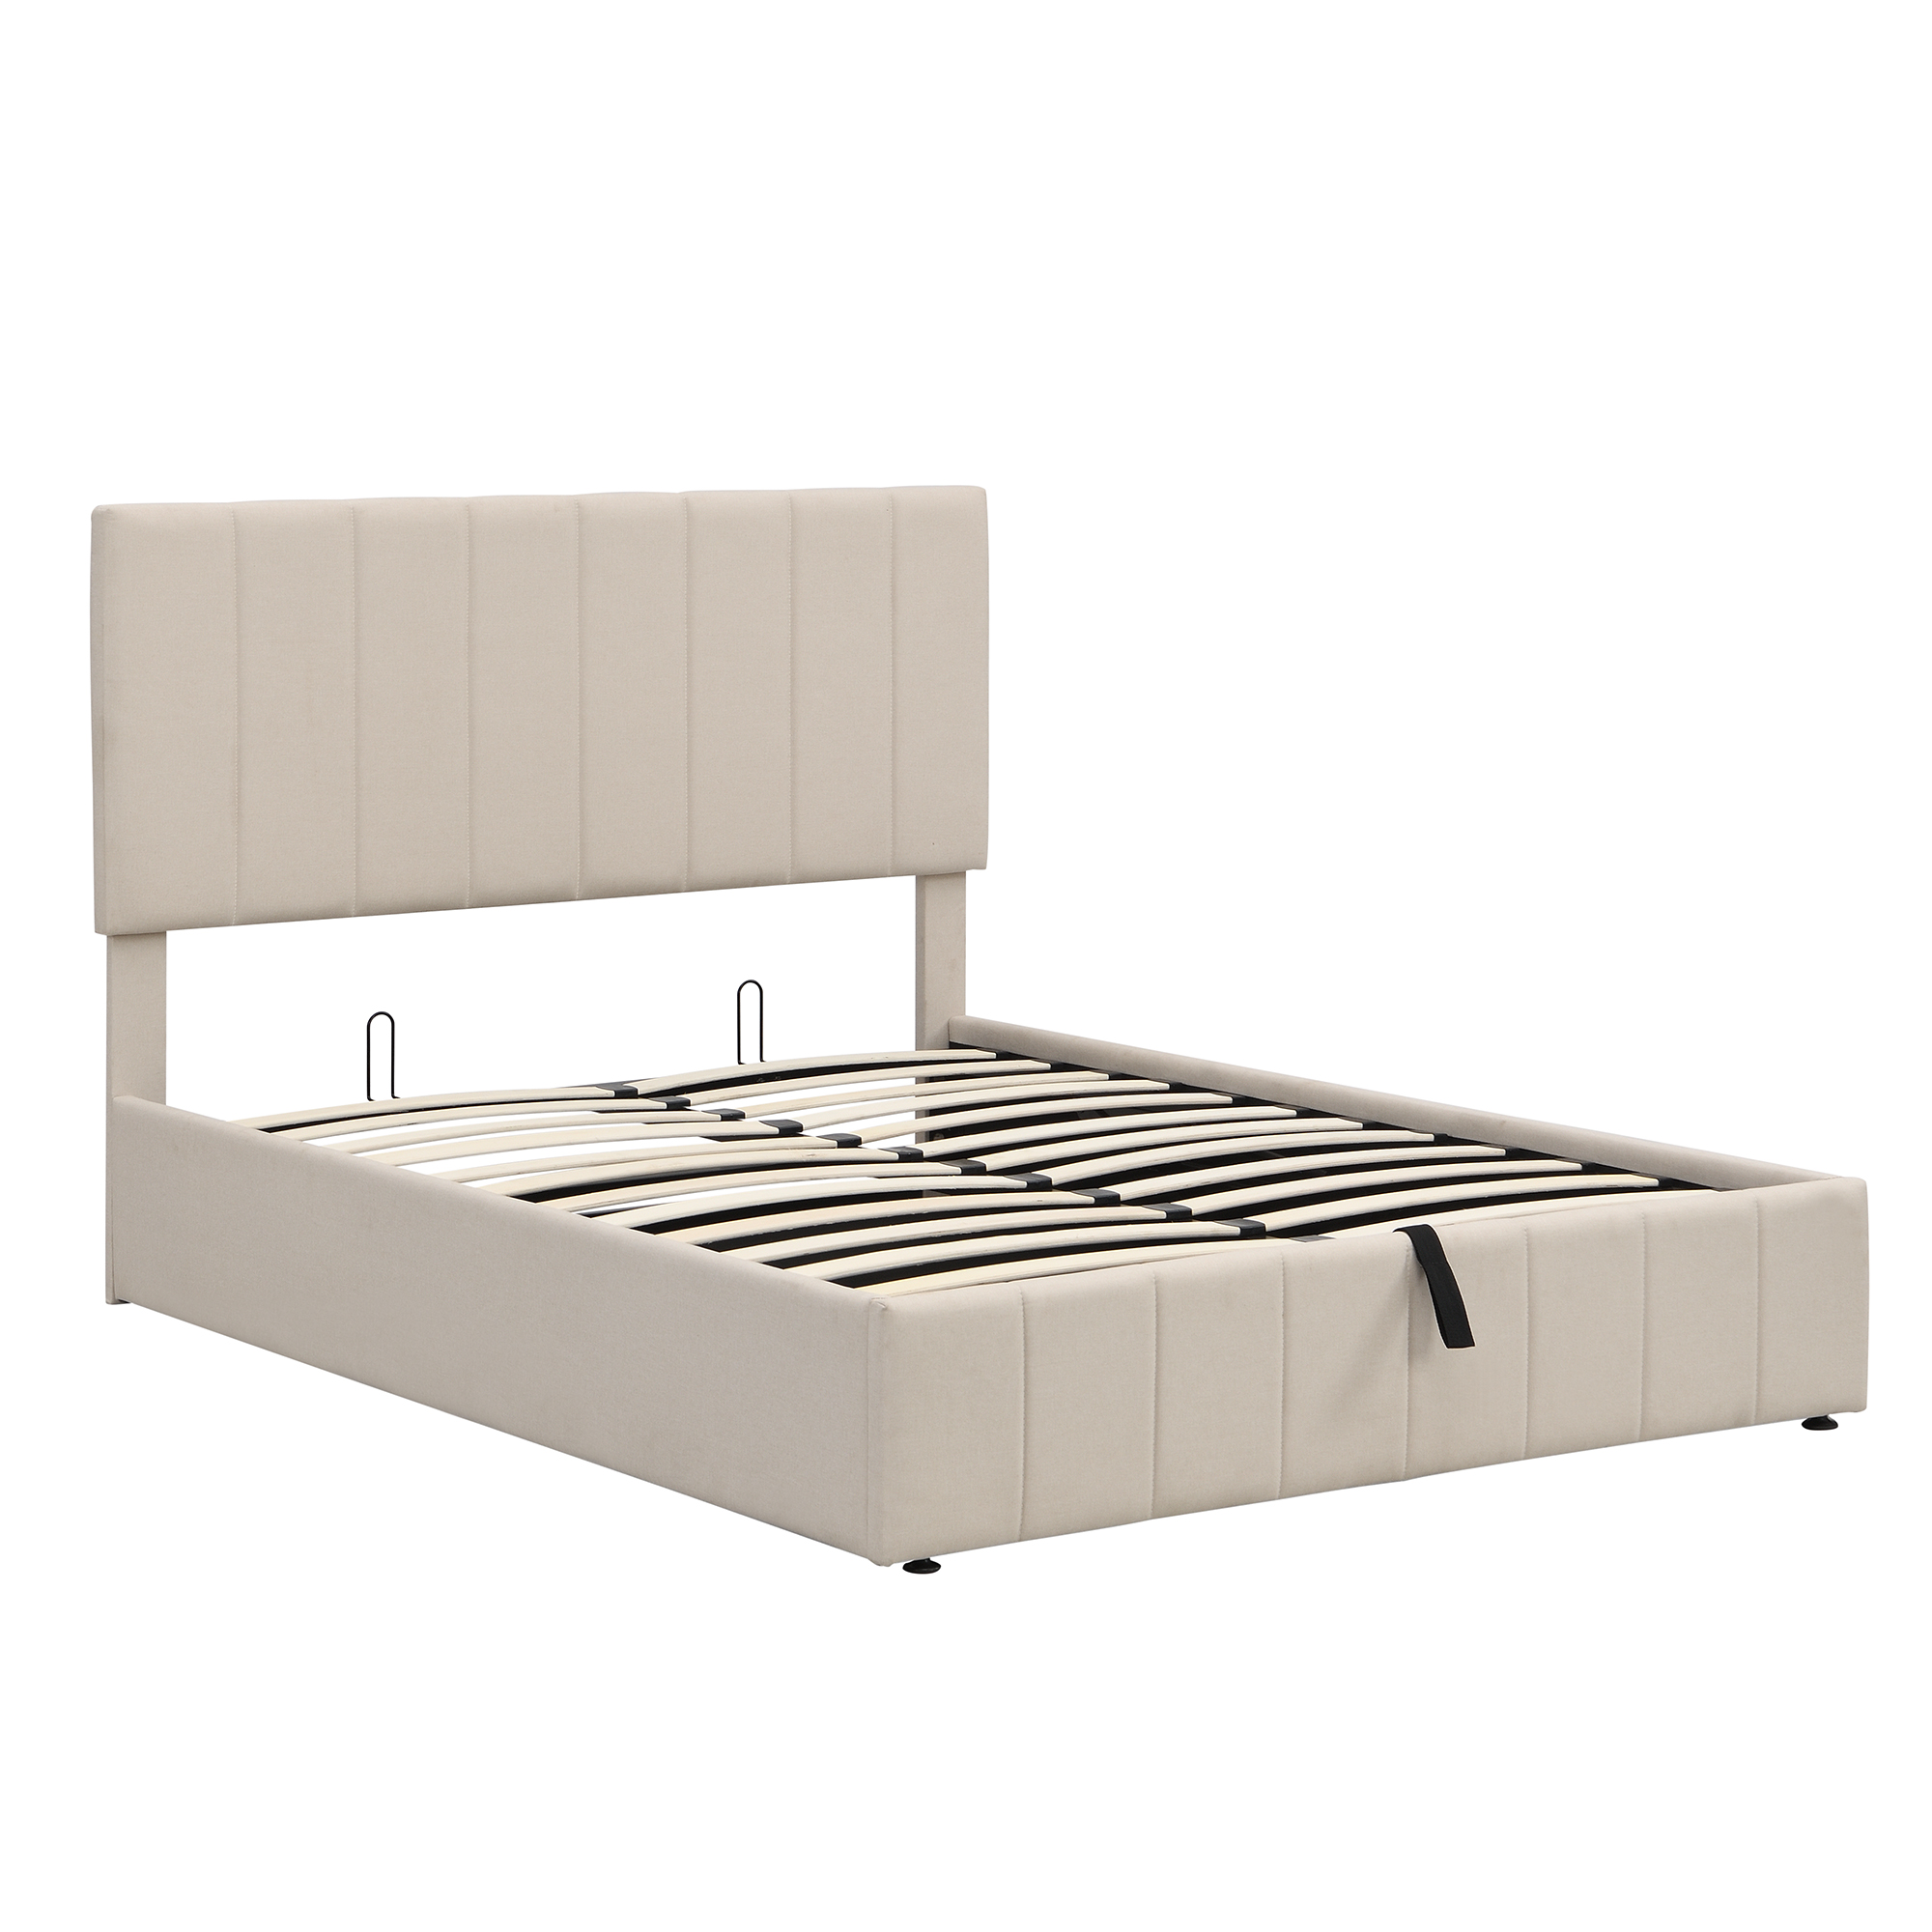 uhomepro Upholstered Platform Bed Frame, Full Size Storage Bed Frame ...